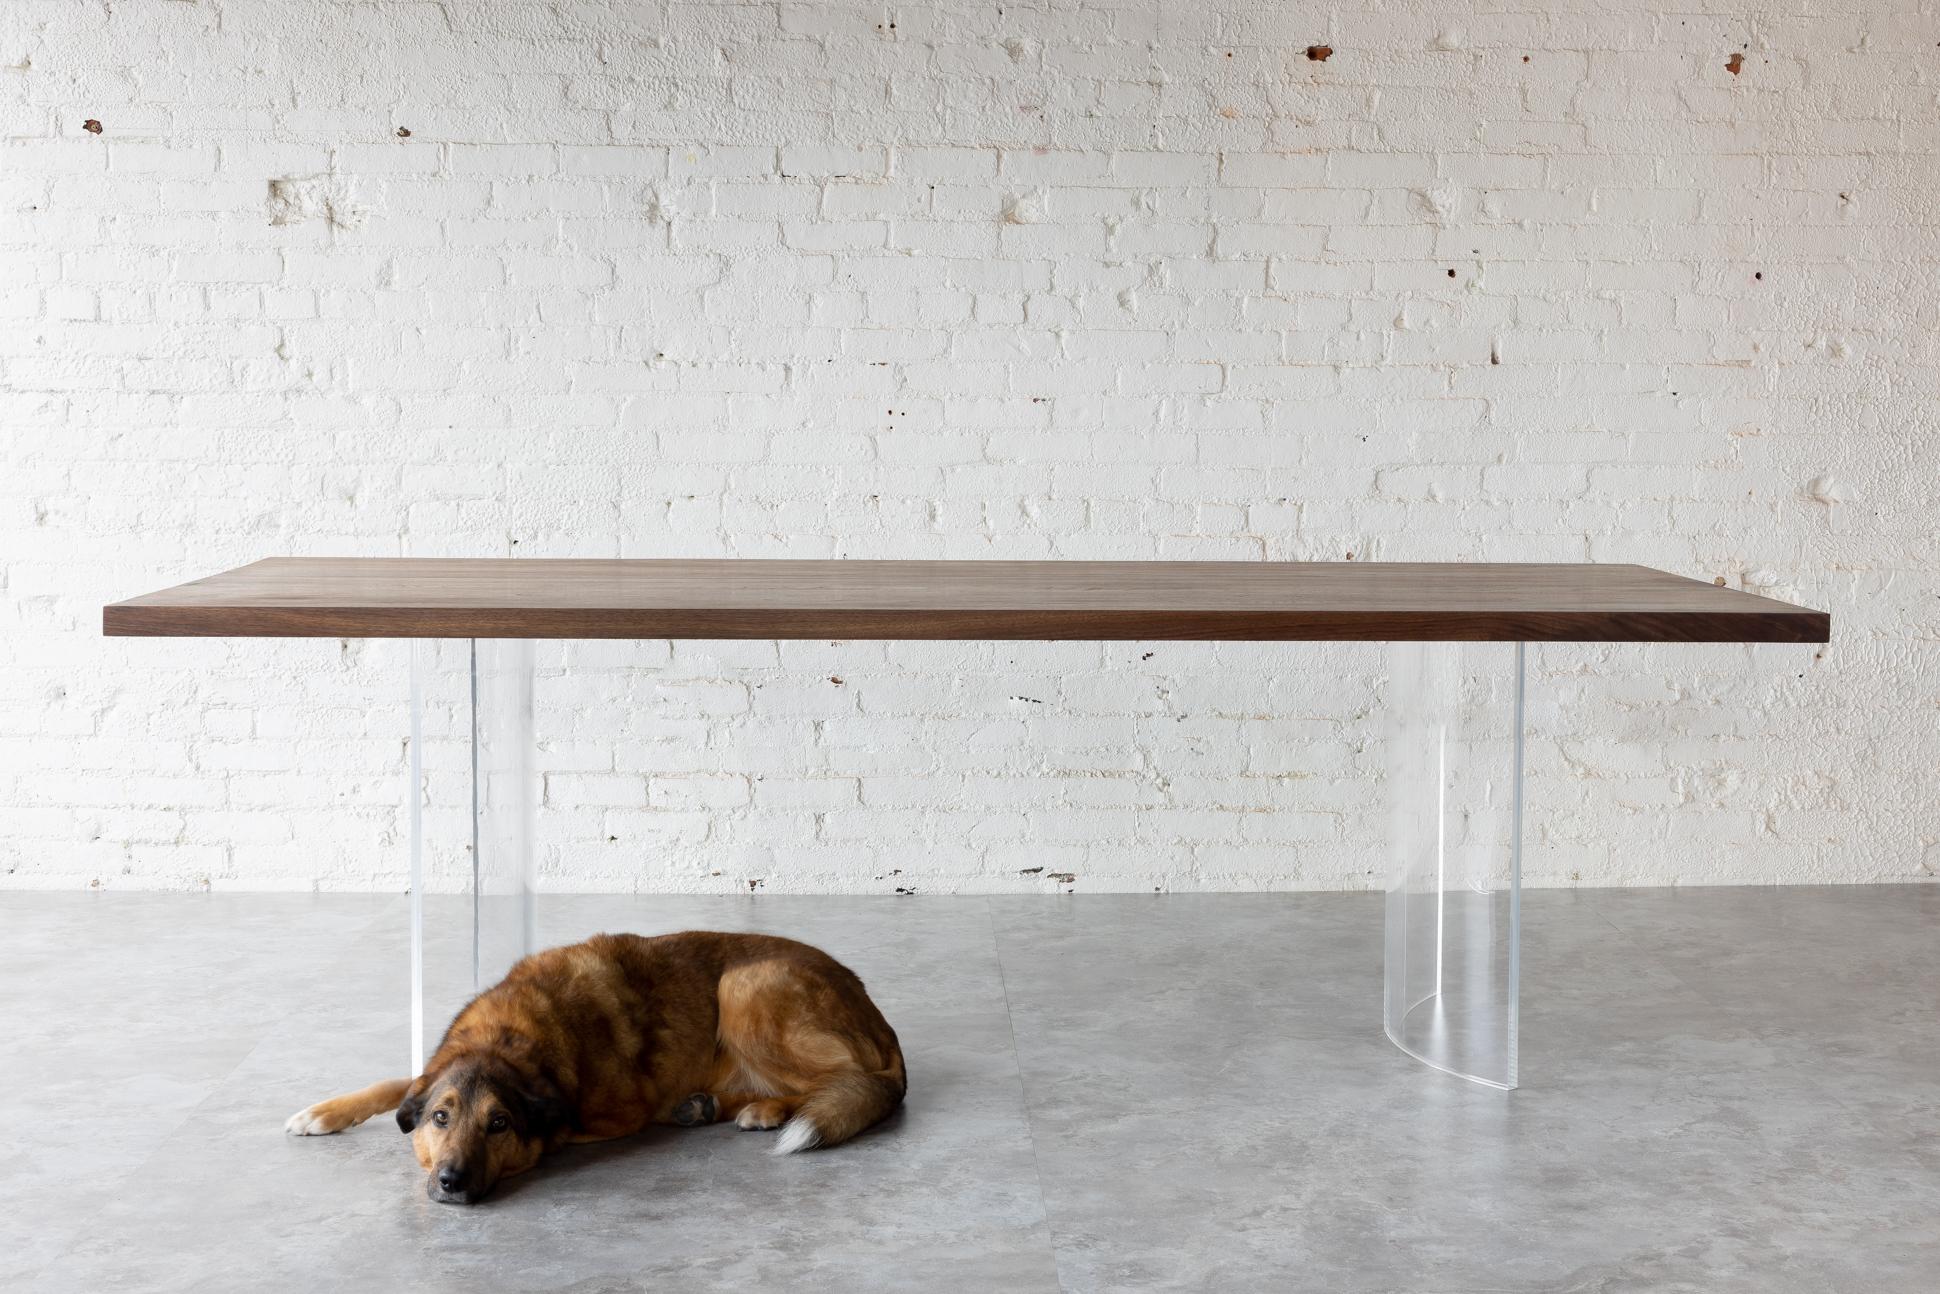 Der Ban Transparent Table von Autonomous Furniture - Dieser atemberaubende Esstisch wurde mit äußerster Präzision gefertigt und ist ein Beweis für unser Engagement, das moderne Zuhause mit unseren dramatisch zeitgenössischen Möbeln zu stören.

Aus